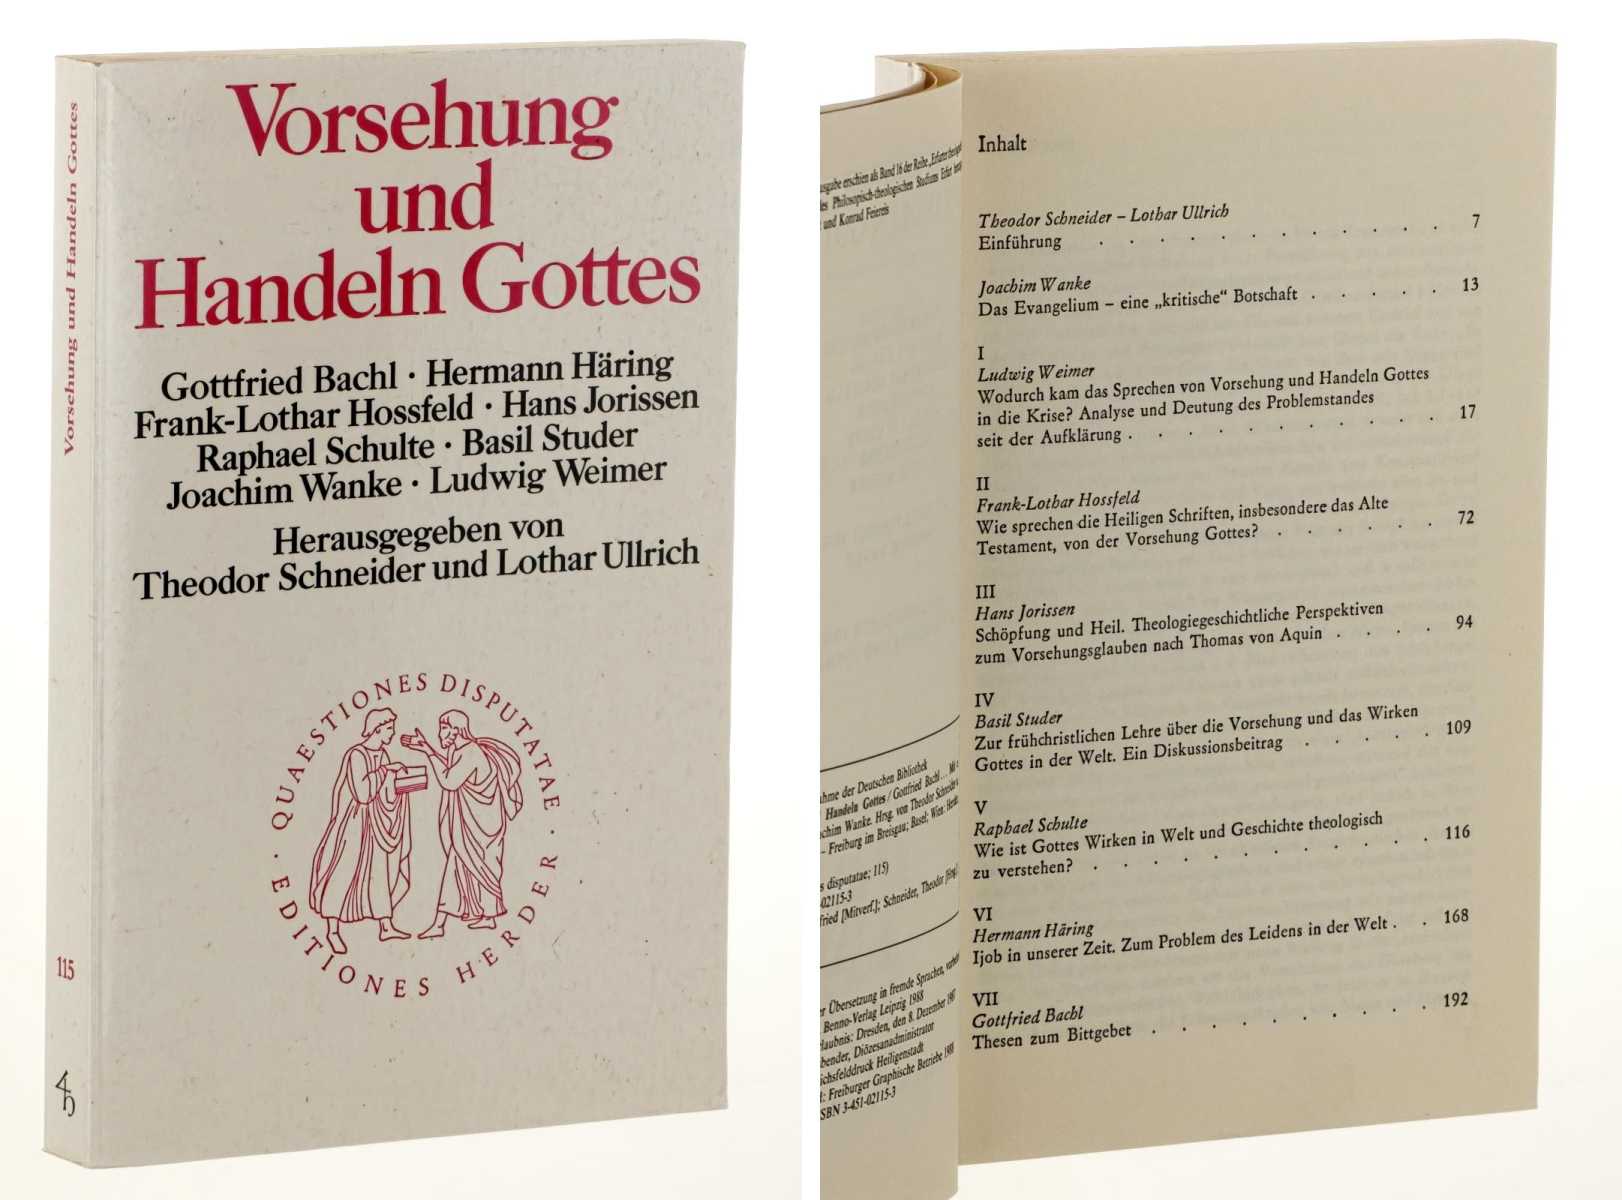   Vorsehung und Handeln Gottes. Hrsg. von Theodor Schneider u. Lothar Ullrich. 